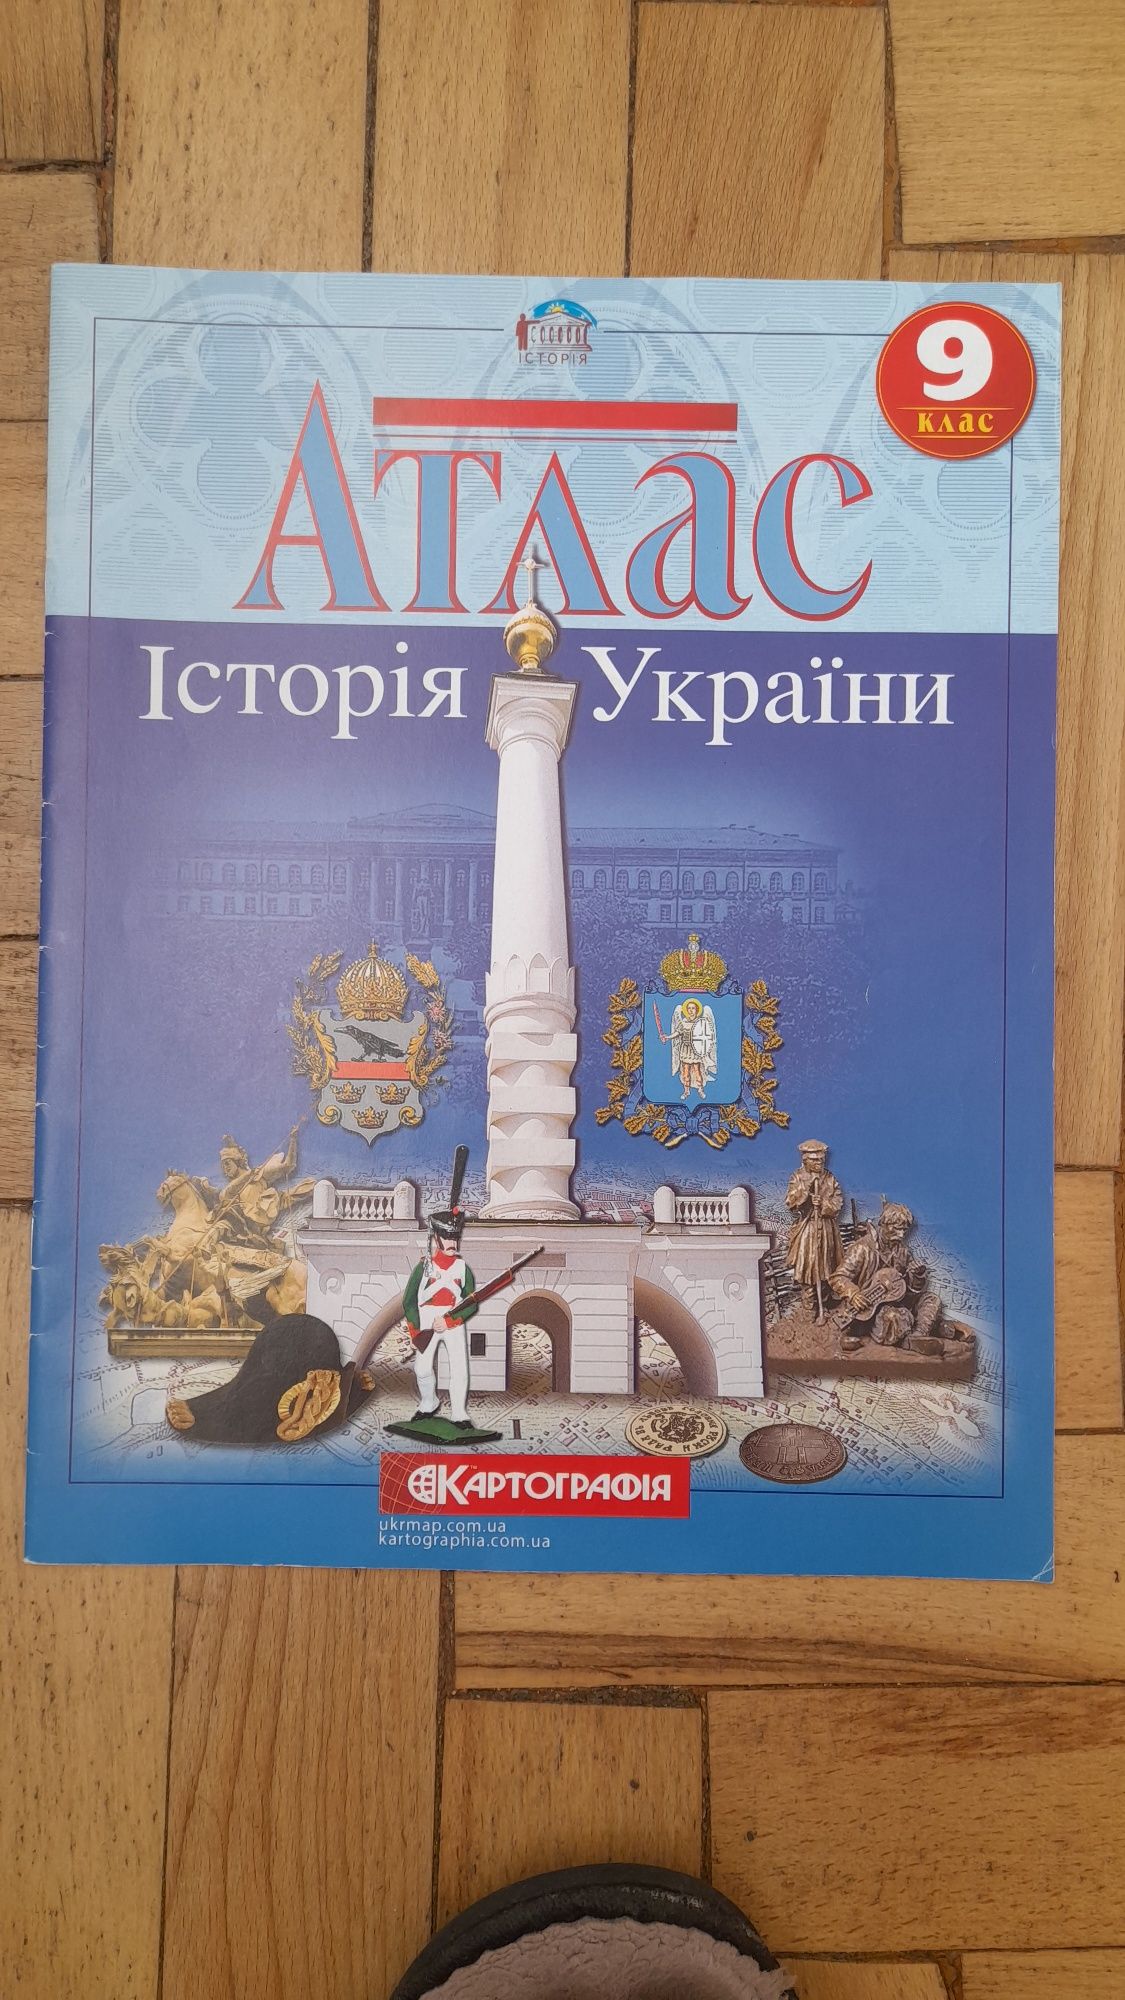 (Нові)Атласи 9 клас з всесвітньо історії та України